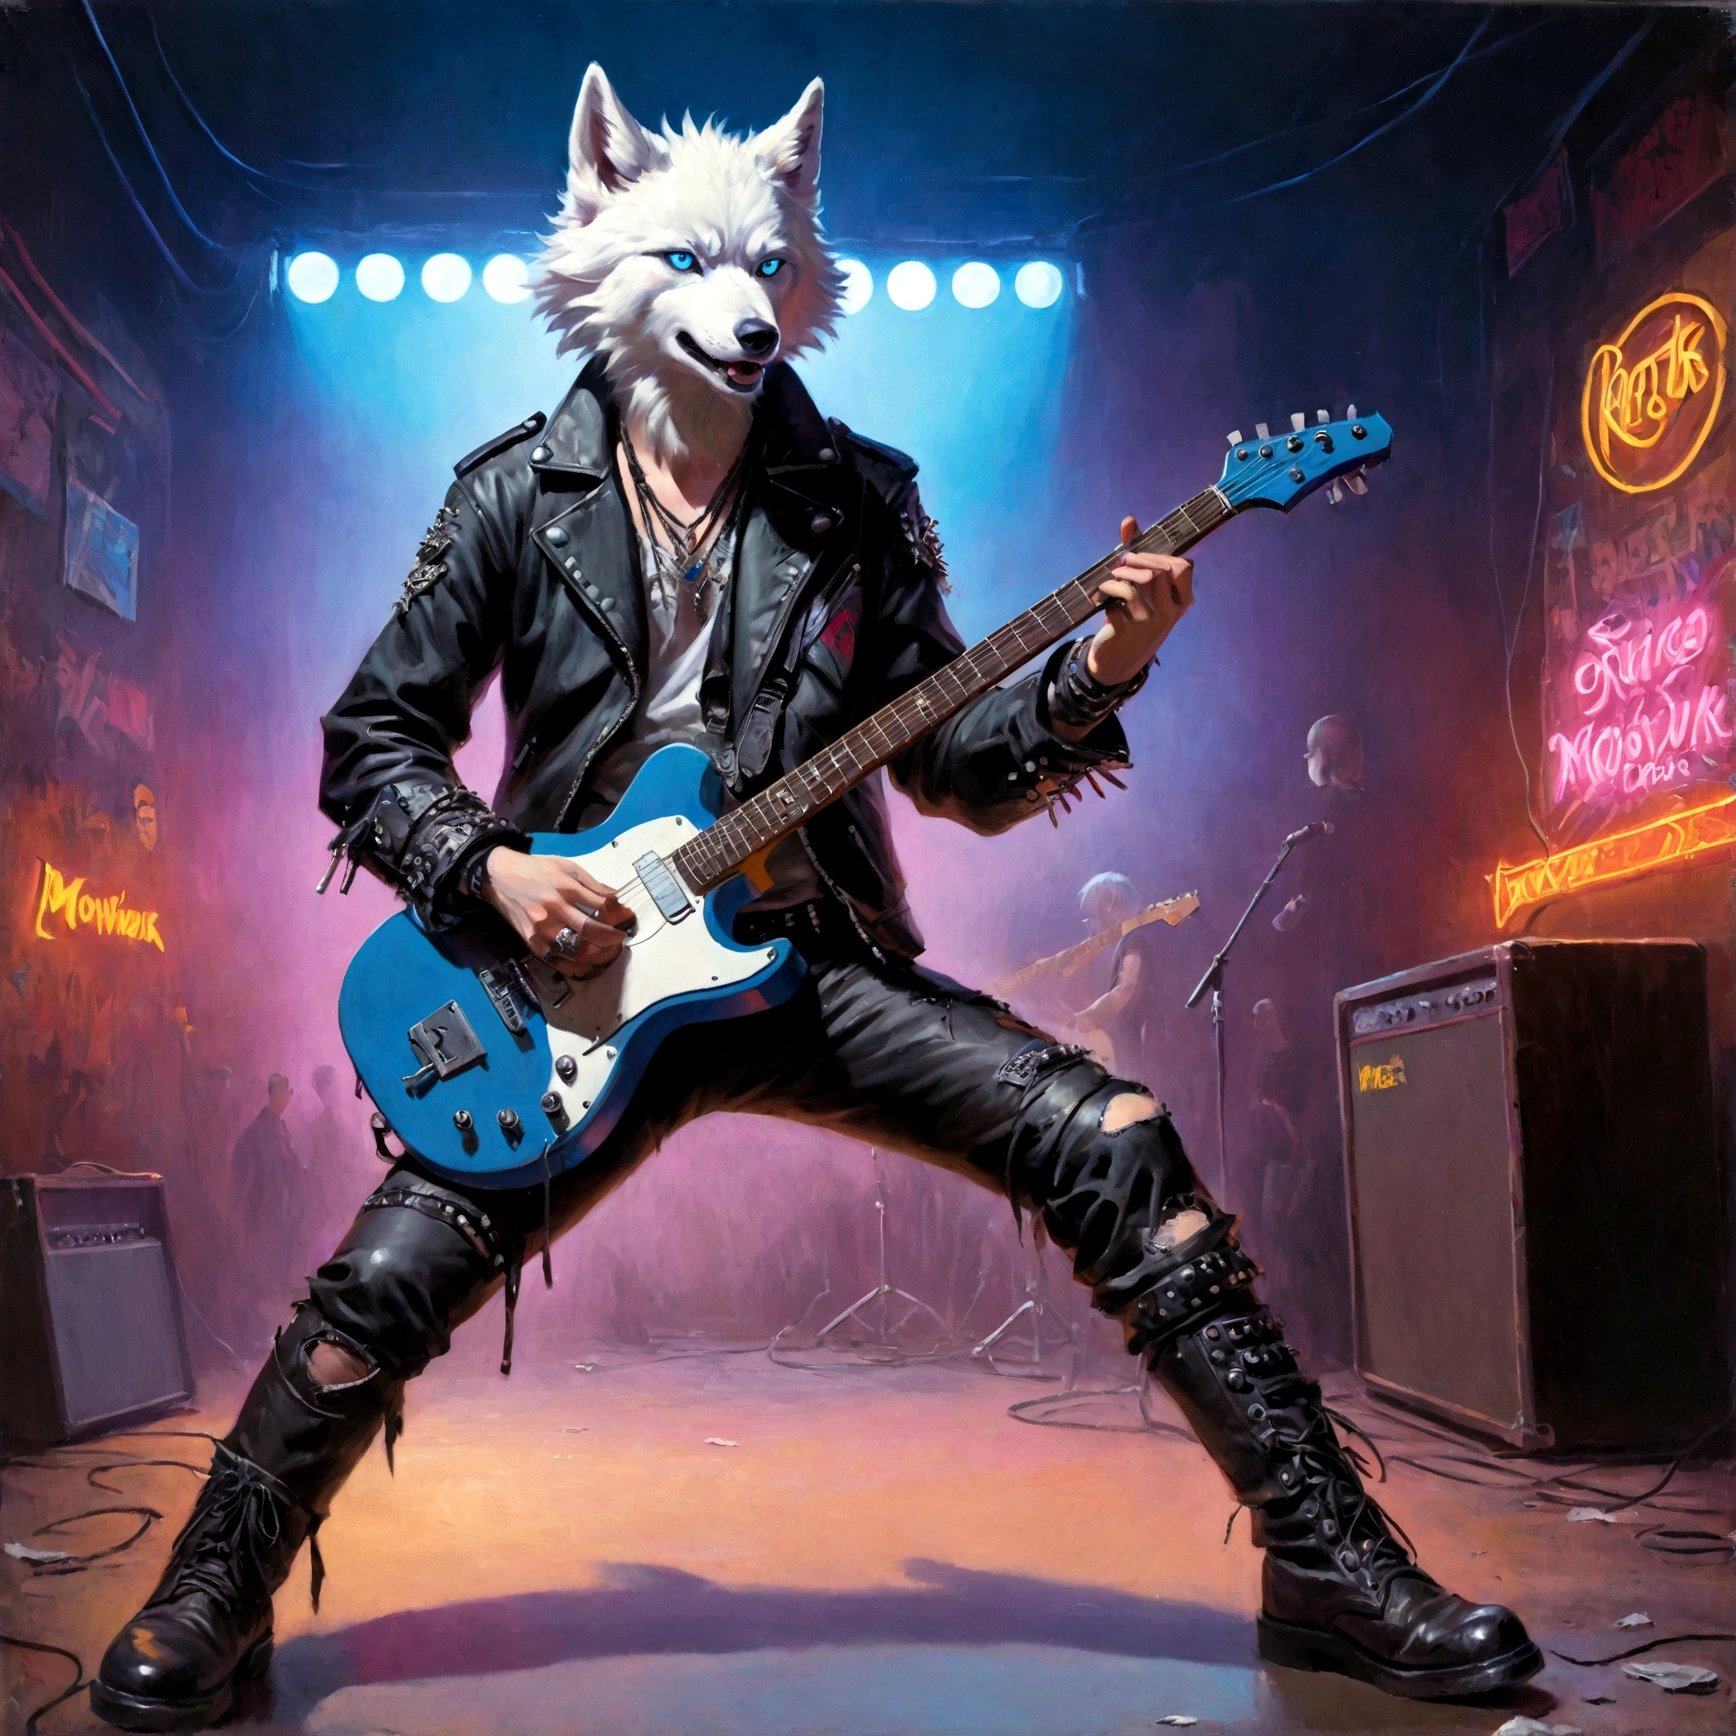 белый волк с голубыми глазами в панк-наряде играет на соло-гитаре в группе, есть синий ирокез, есть кожаная заплатанная куртка, в рваных ботинках, измельчение на гитаре, много разноцветных неоновых огней